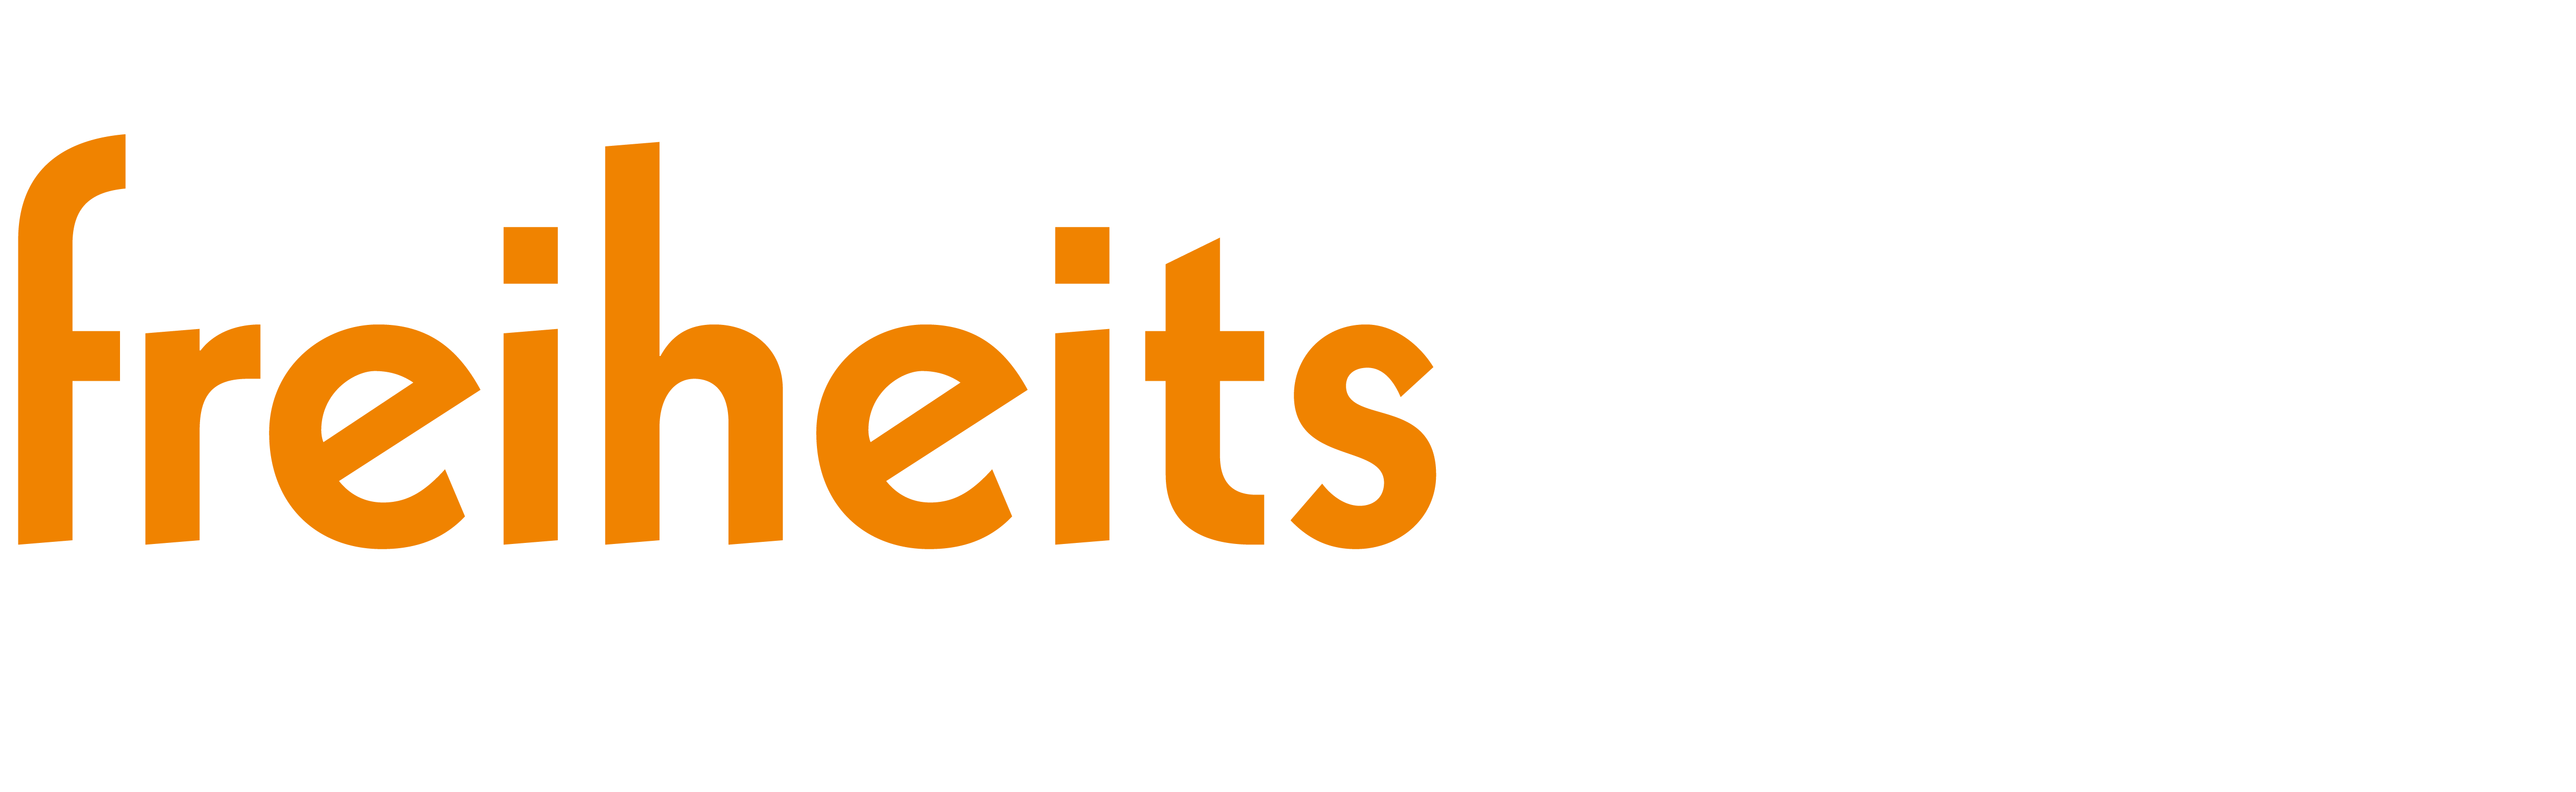 Logo freiheitswerke